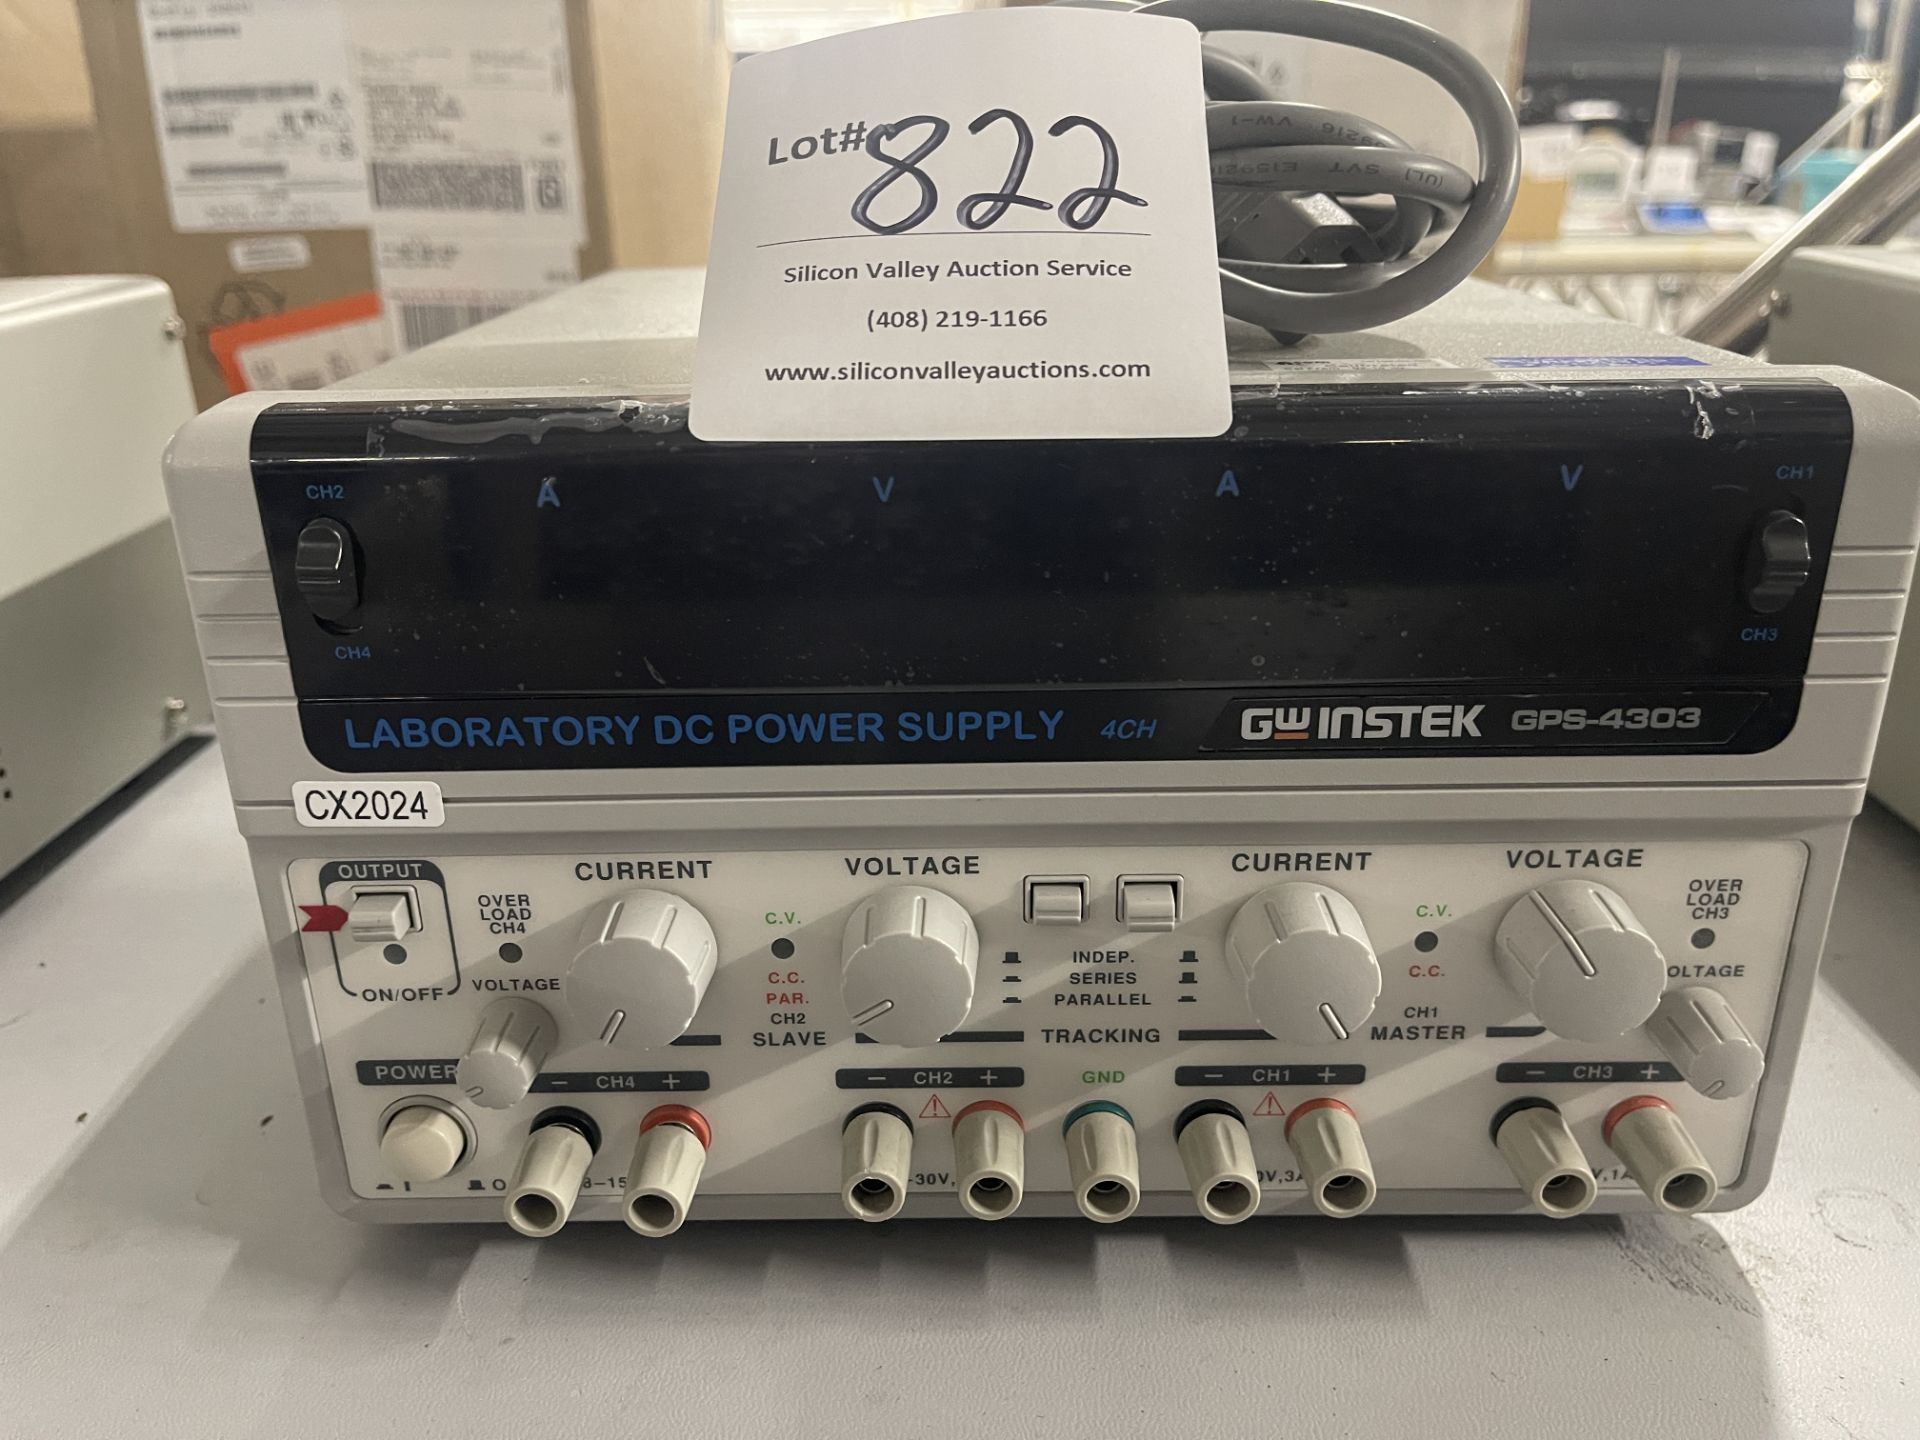 GW Instek GPS-2303 Laboratory DC Power Supply